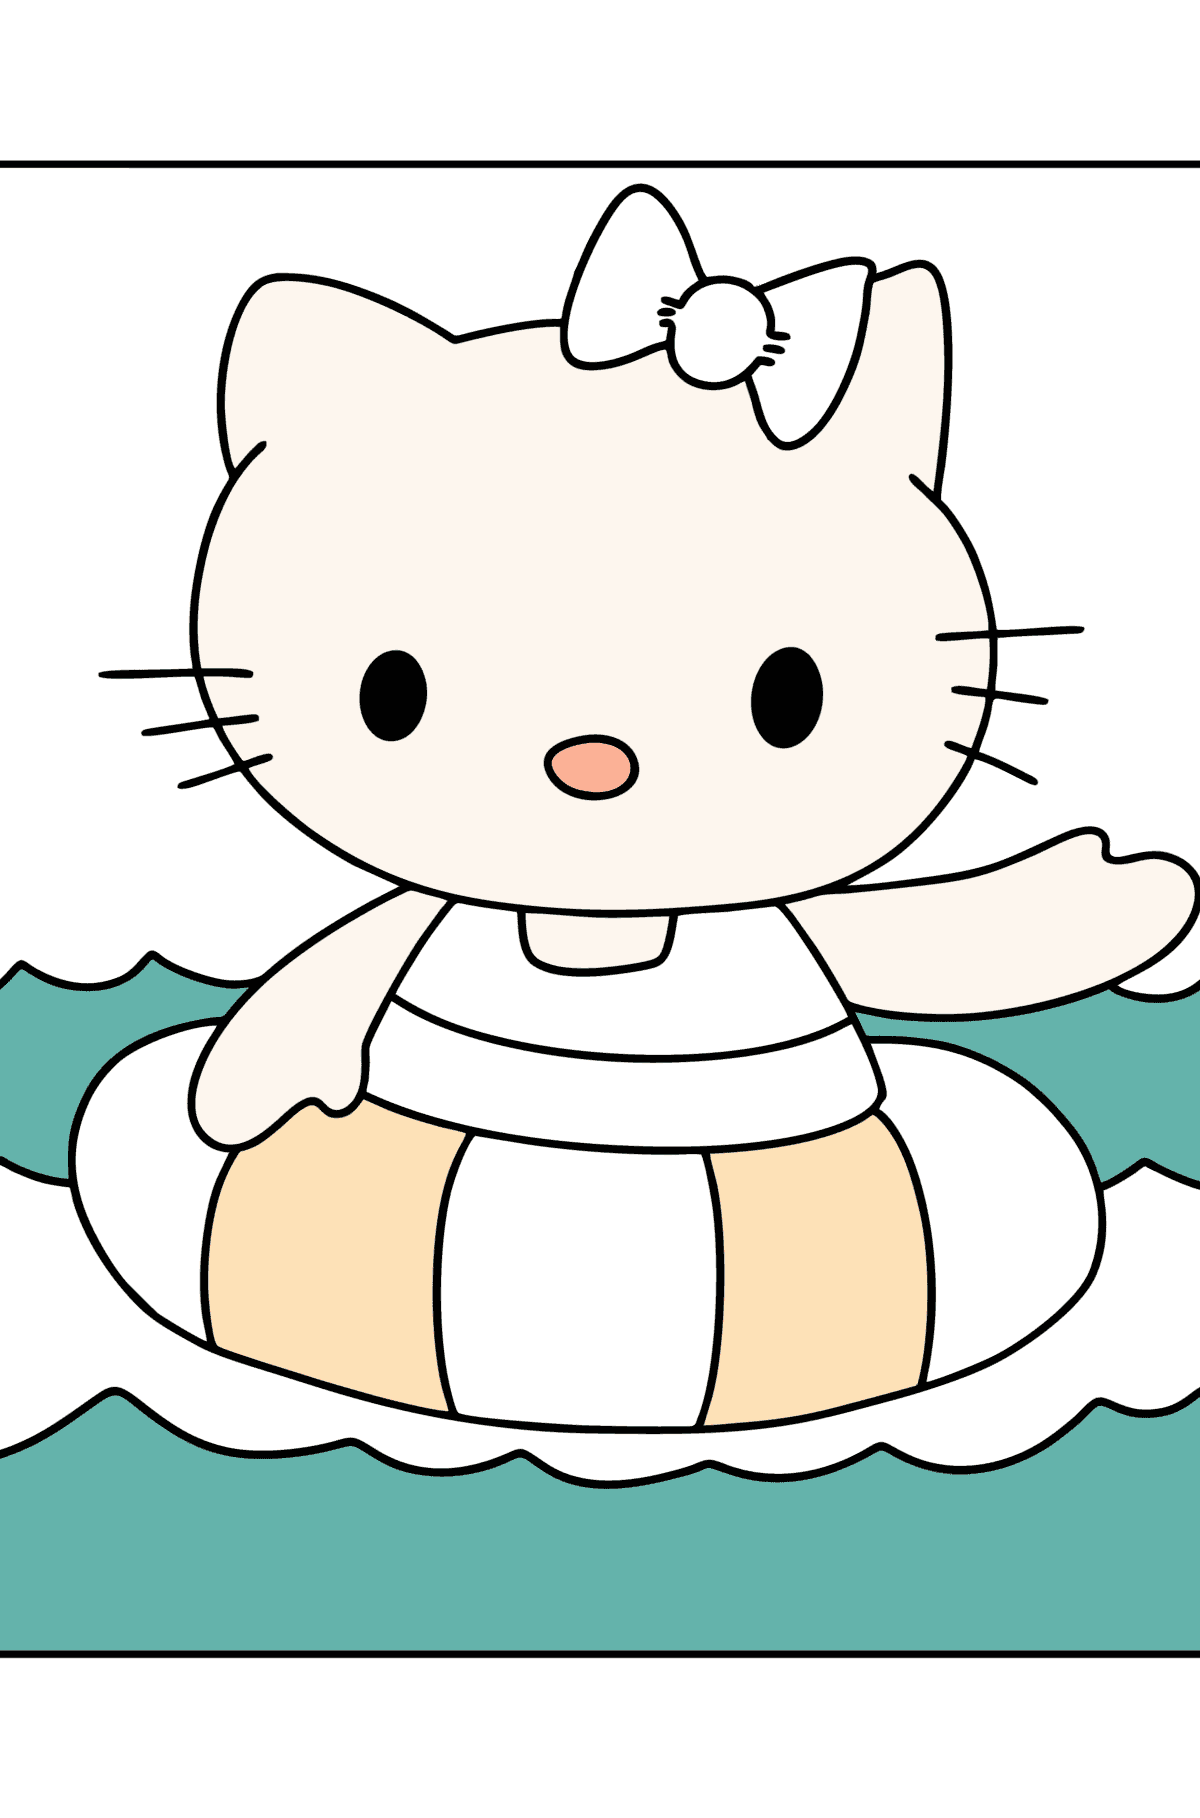 Boyama sayfası Hello Kitty yüzer - Boyamalar çocuklar için